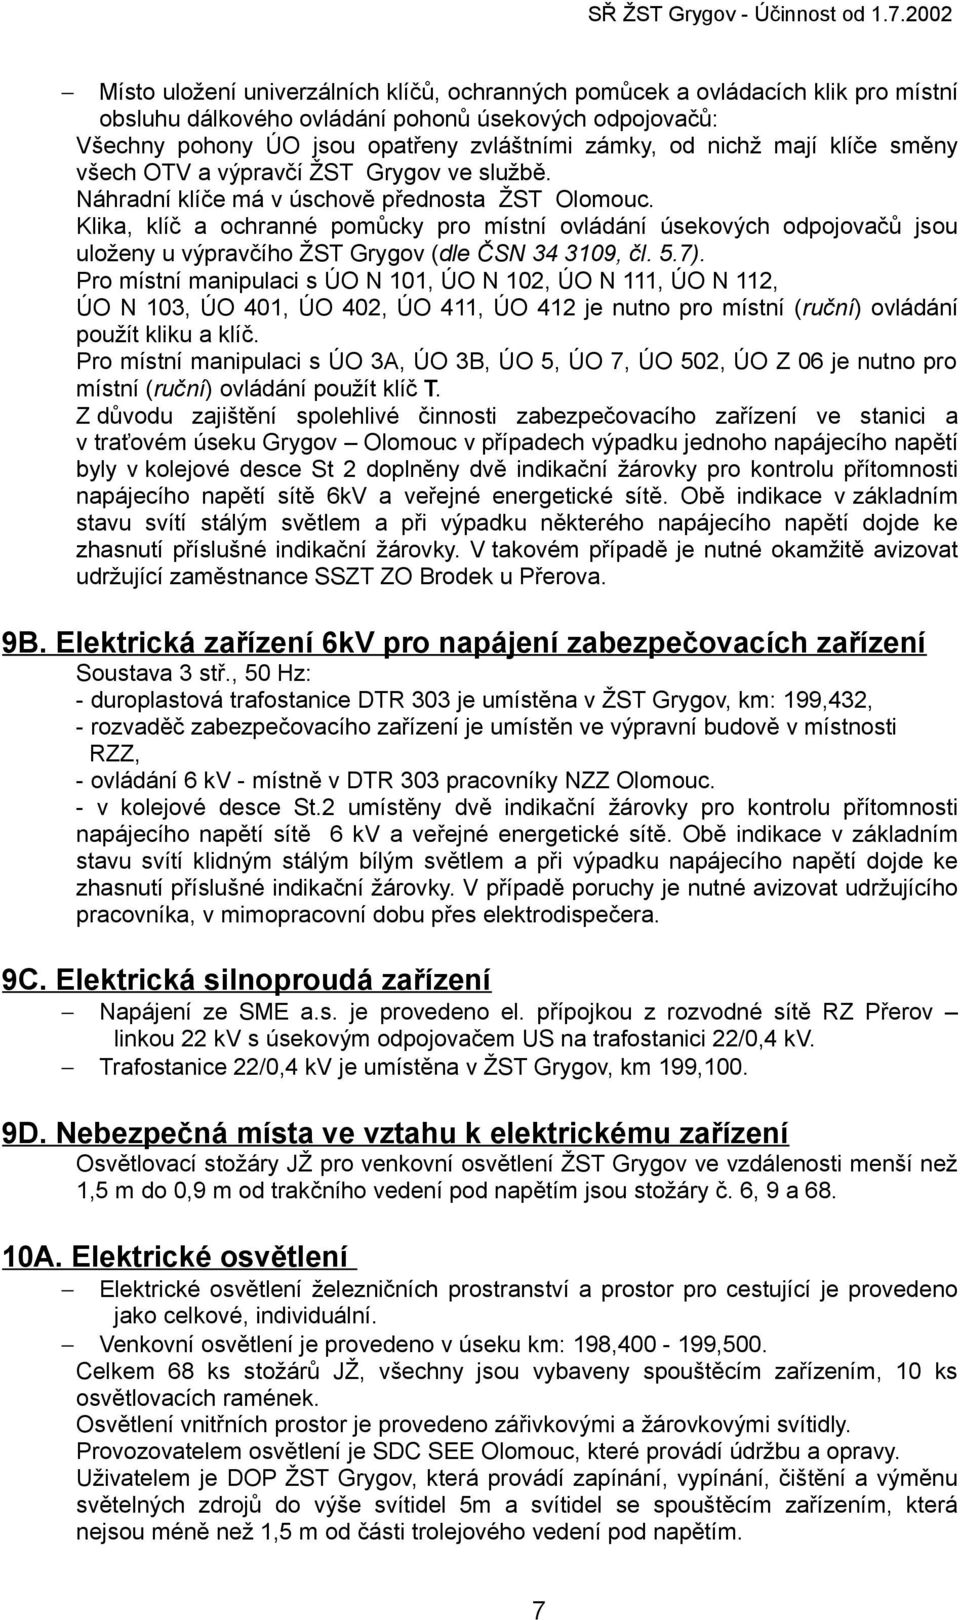 Klika, klíč a ochranné pomůcky pro místní ovládání úsekových odpojovačů jsou uloženy u výpravčího ŽST Grygov (dle ČSN 34 3109, čl. 5.7).